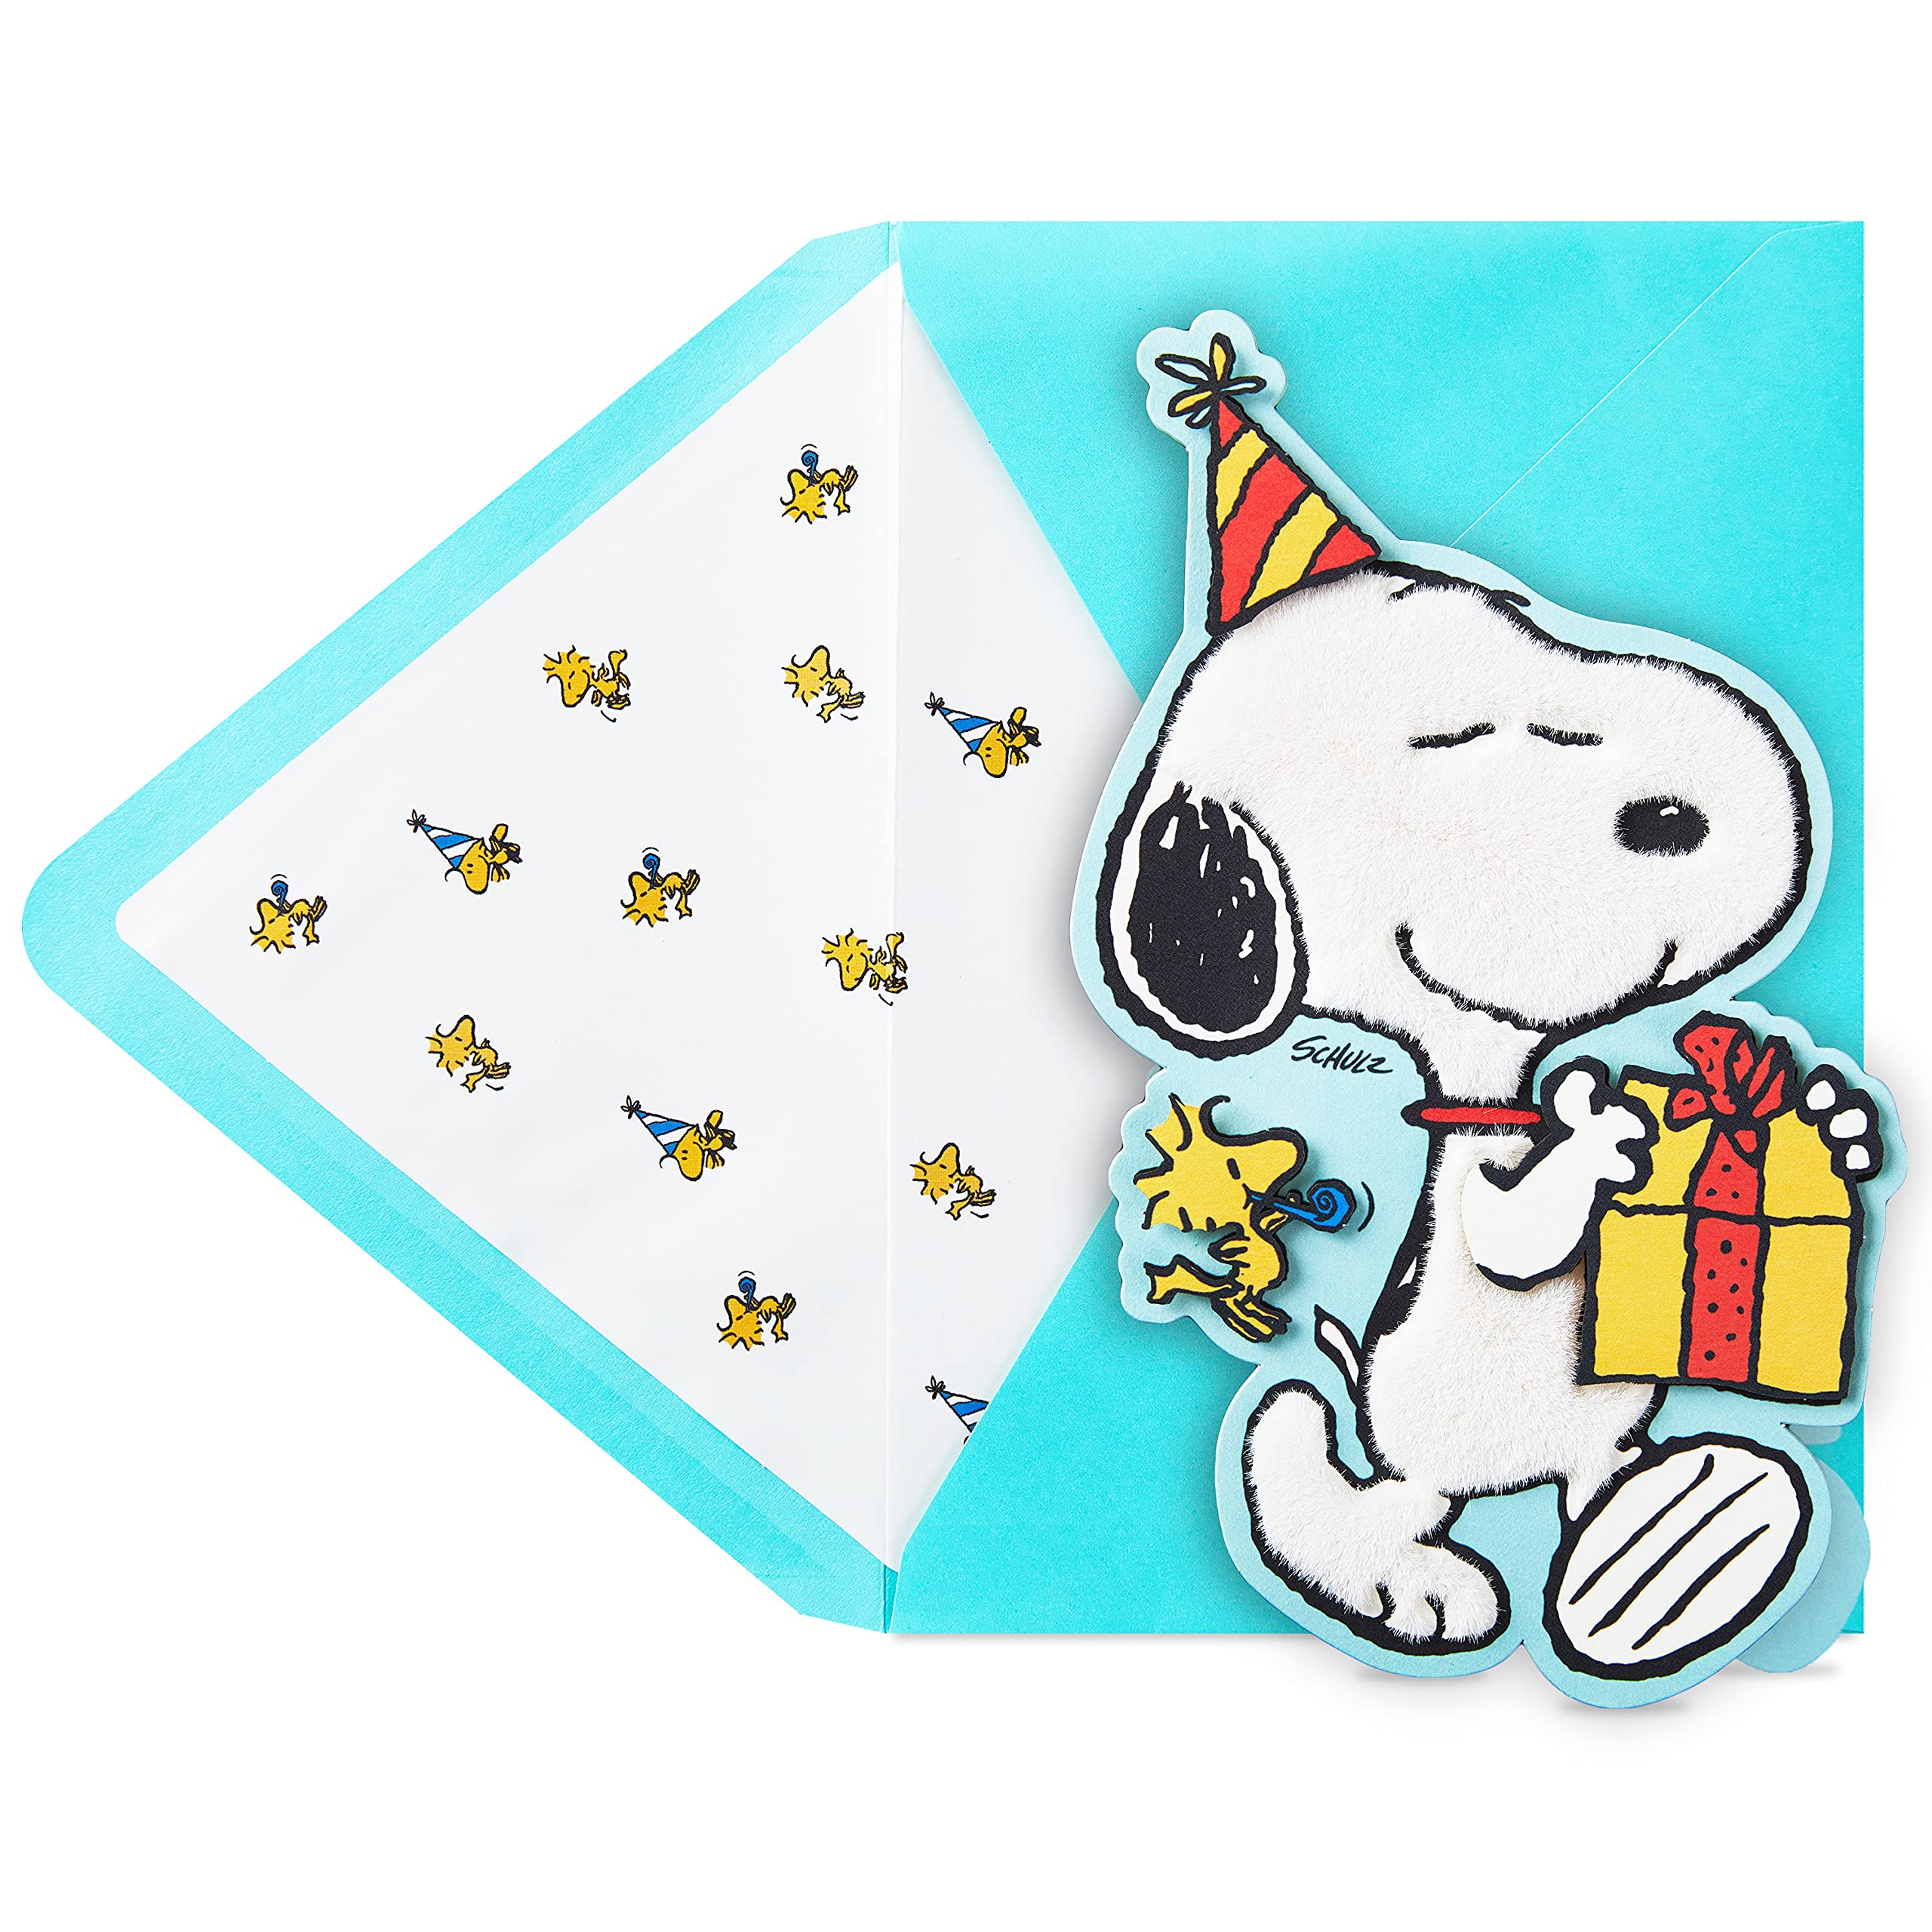 Tarjeta de cumpleaños con diseño de Snoopy